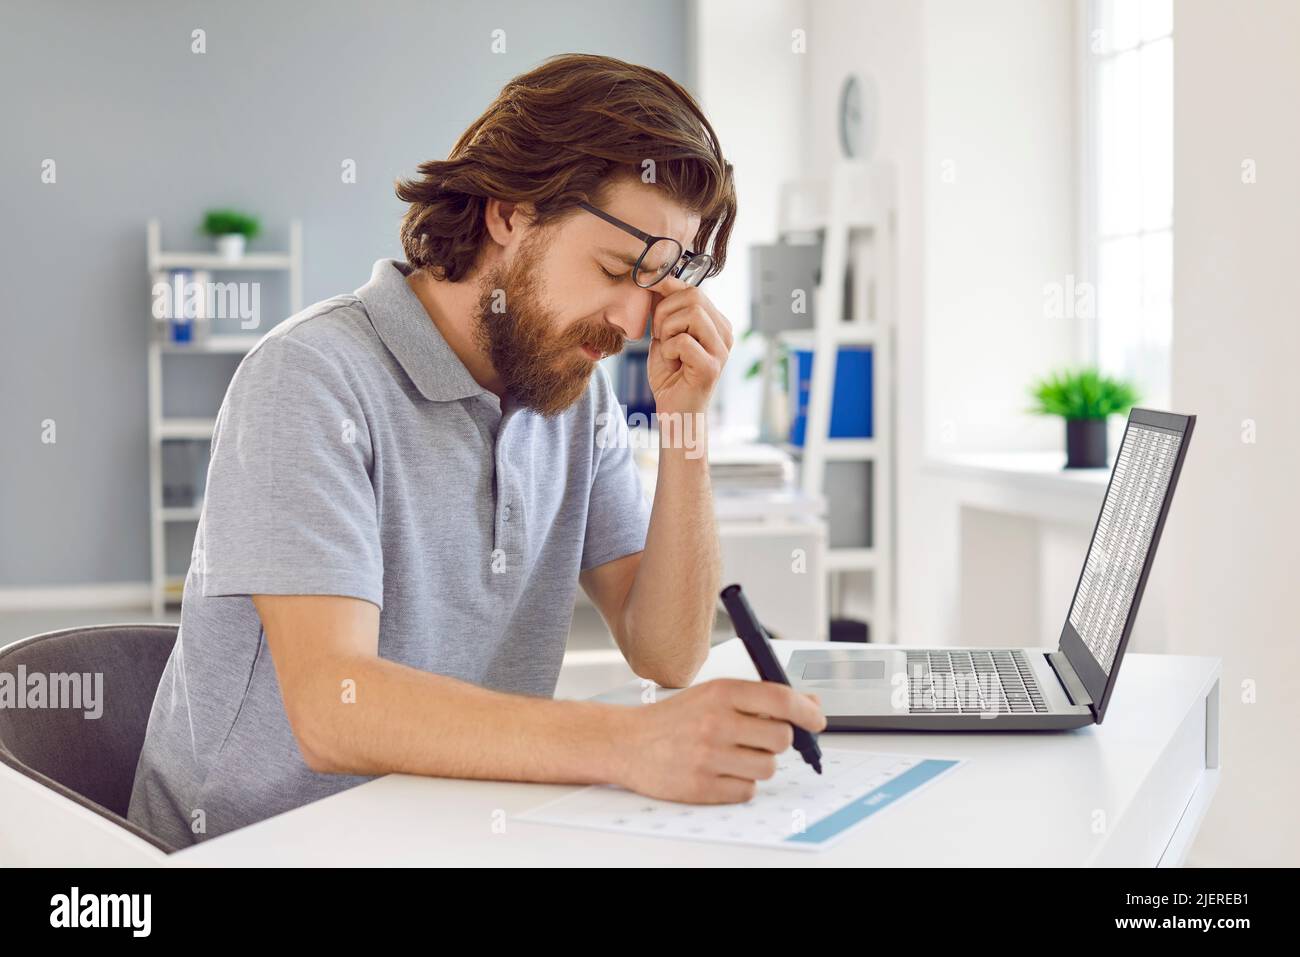 El hombre cansado está sobrecargado de trabajo y tiene dolor en los ojos por trabajar con el portátil en la oficina. Foto de stock